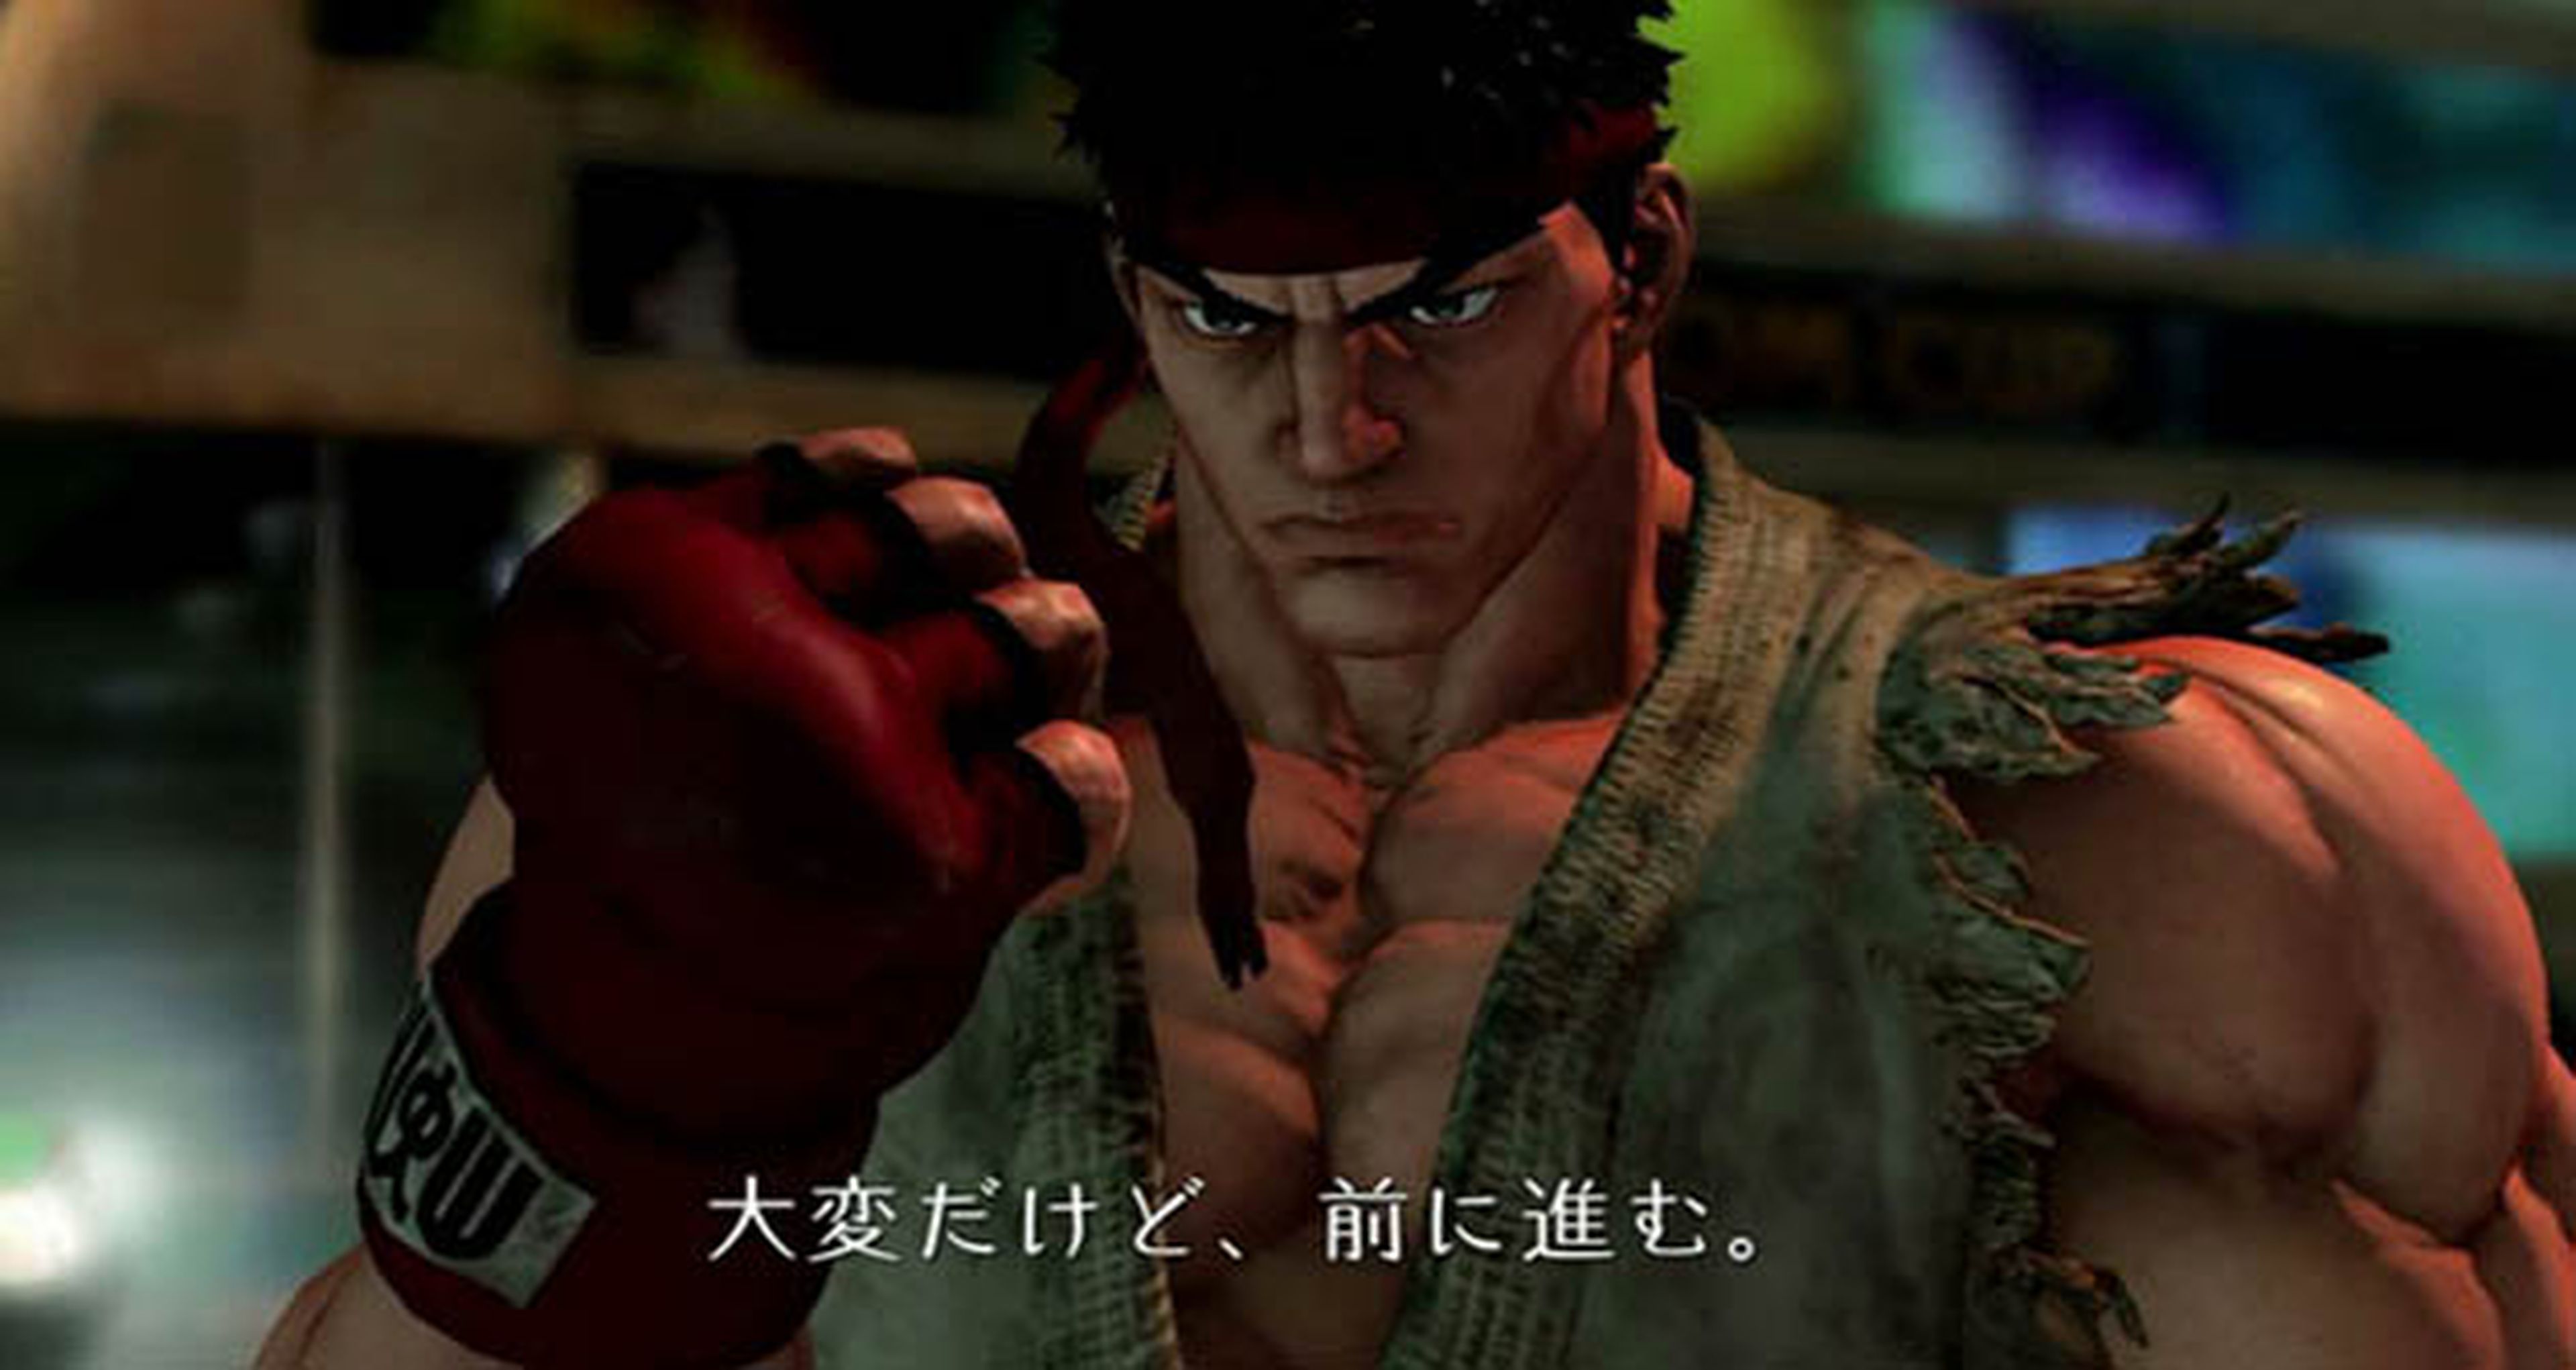 Nuevo vídeo de Street Fighter V con un combate de Ryu vs Chun-Li